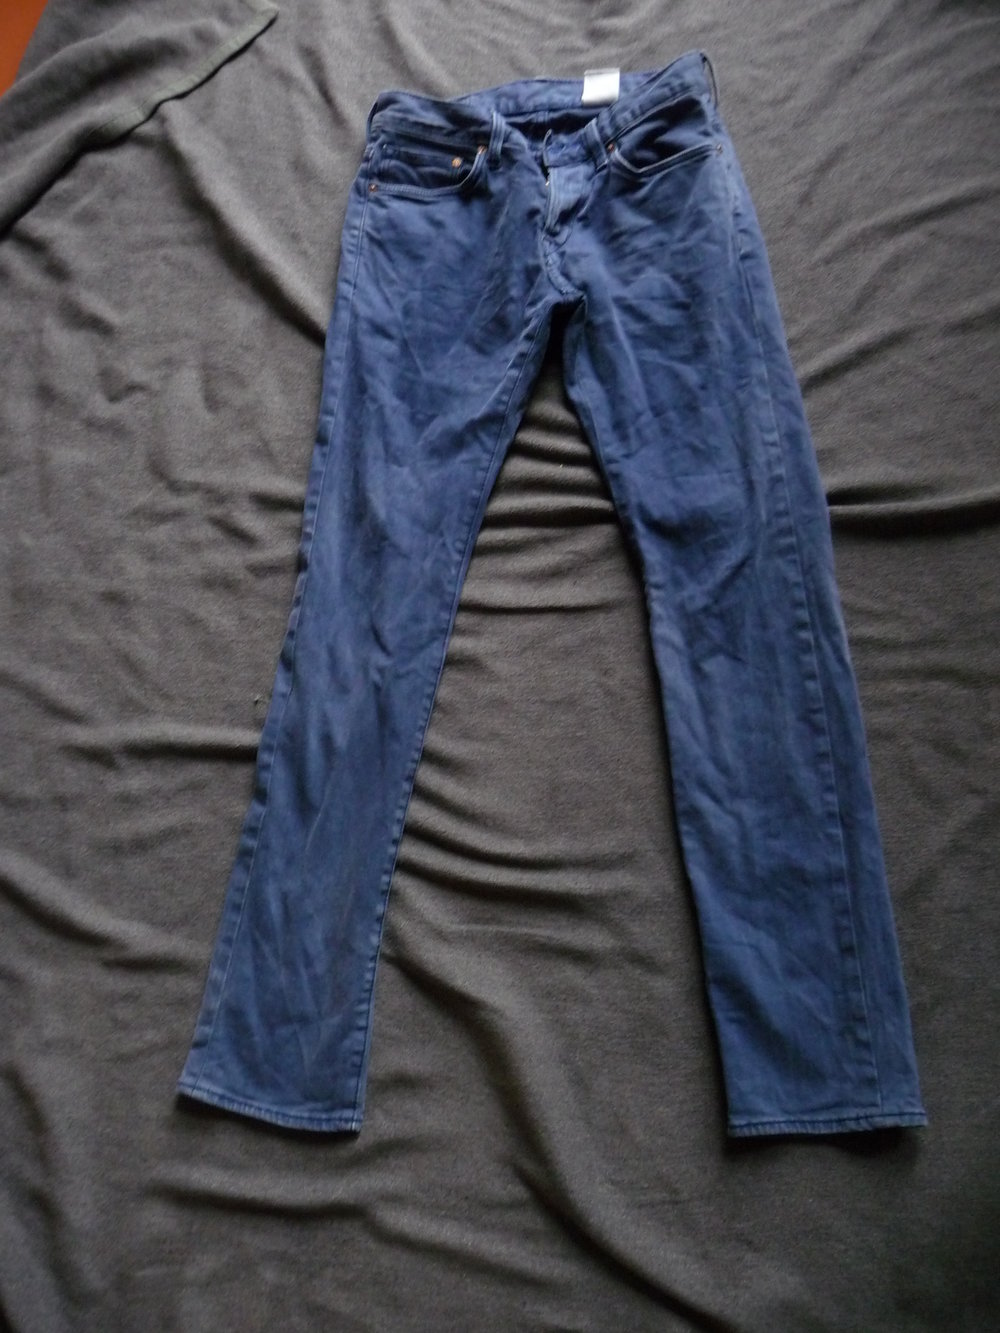 Jeans von H&M Gr.29/32